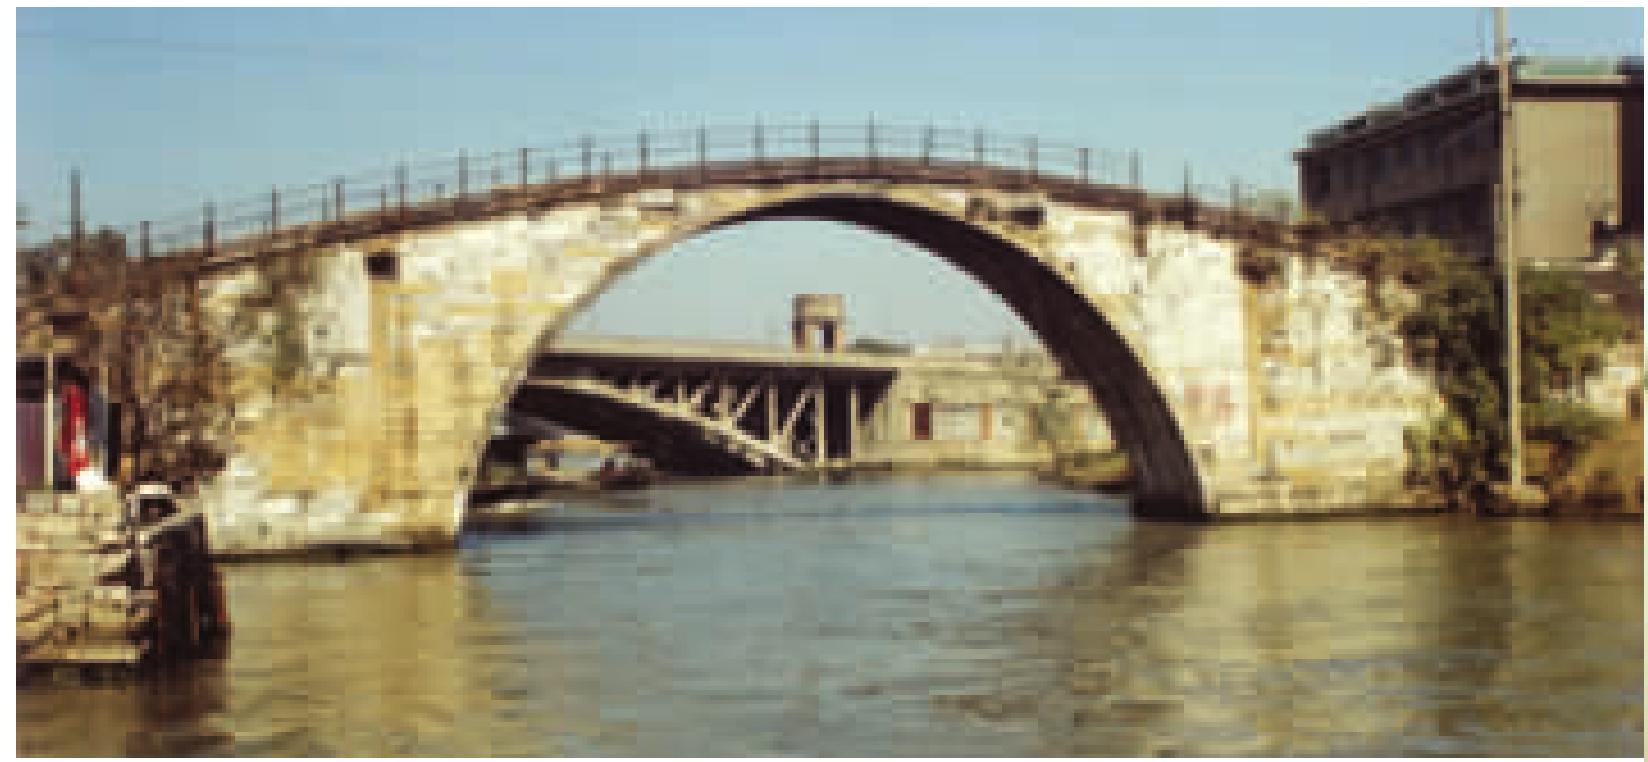 苏州灭渡桥